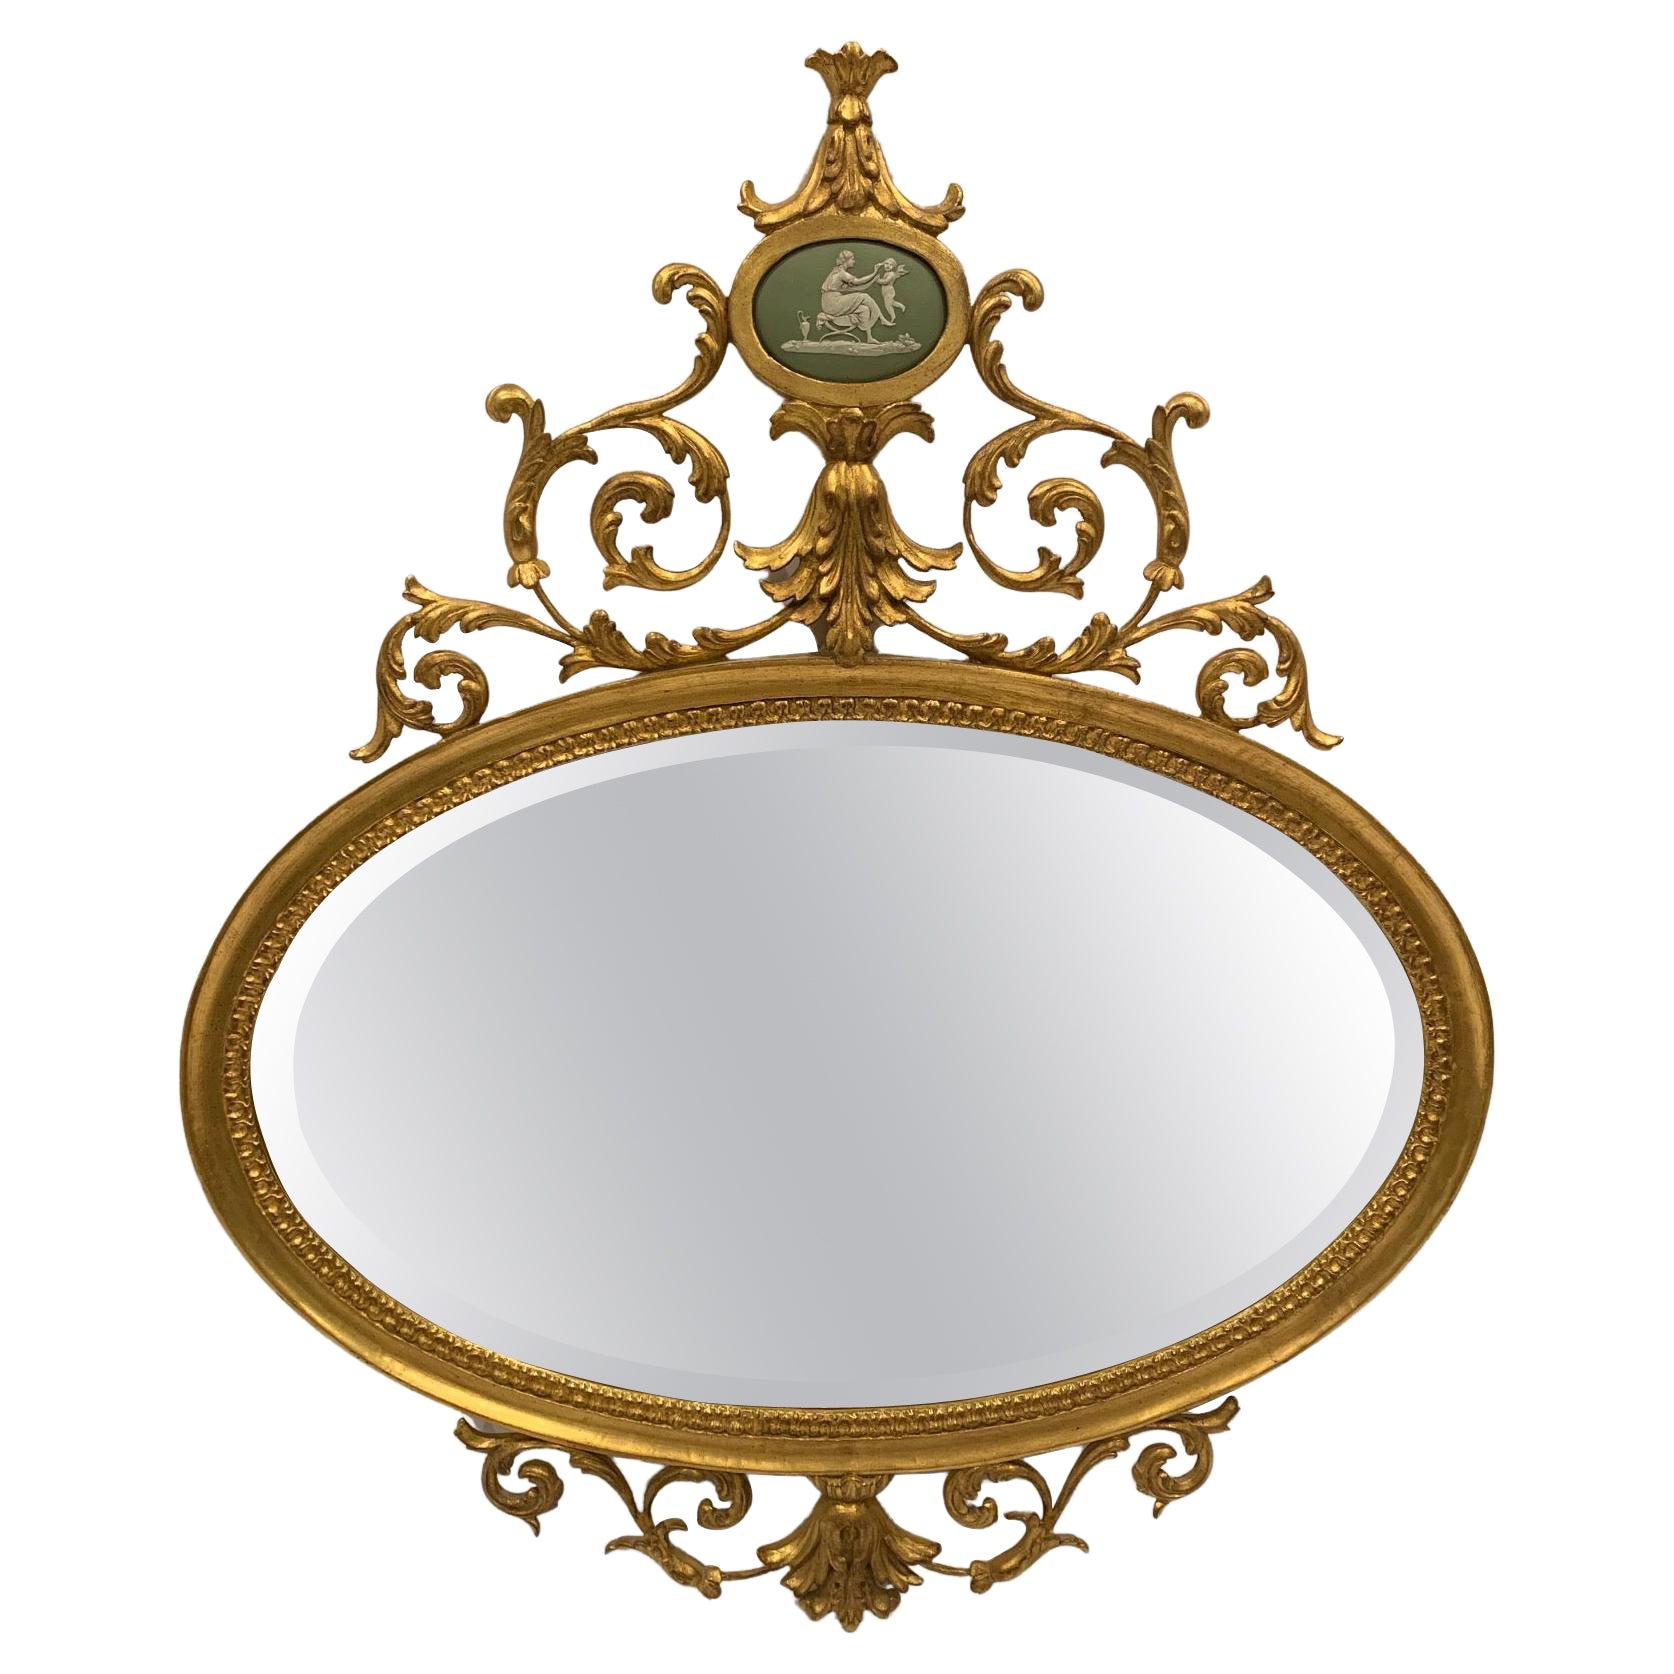 Miroir ovale romantique en bois doré de la guilde des sculpteurs avec camée en bois de tilleul